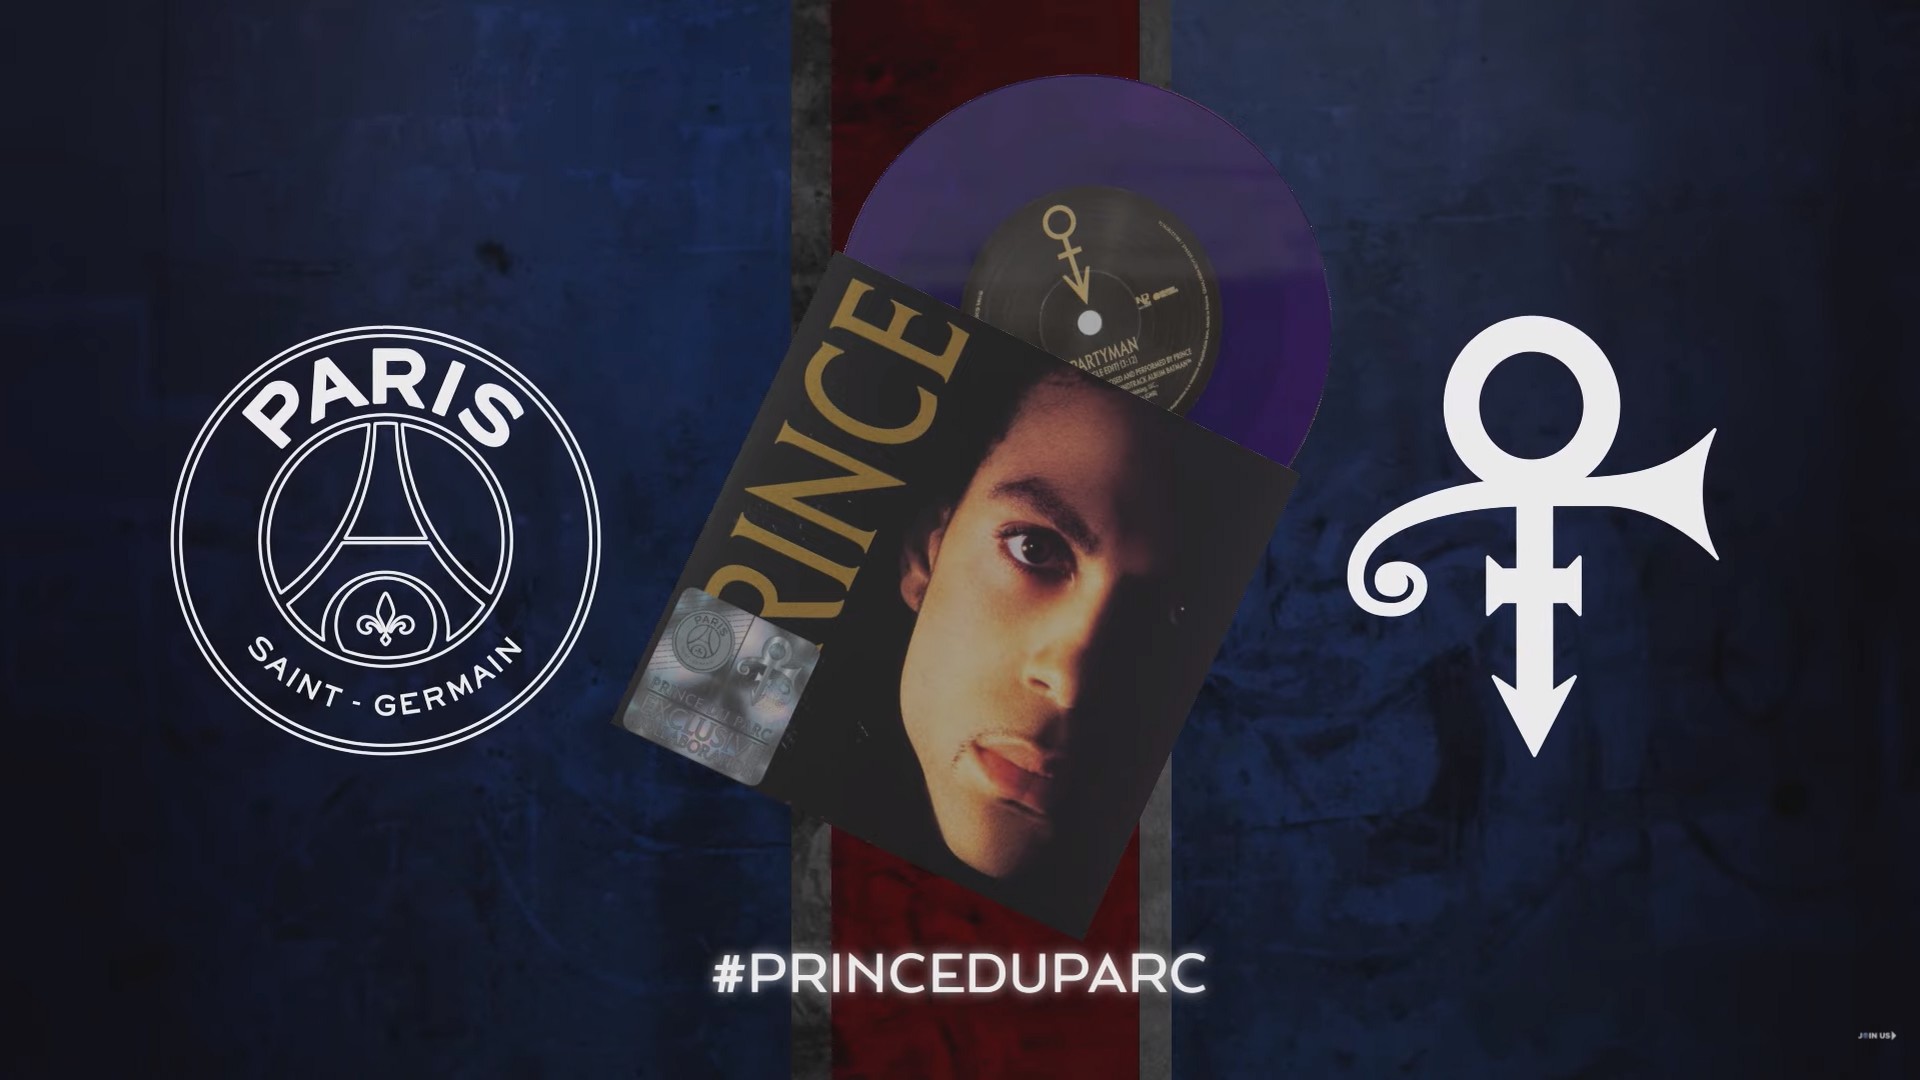 PSG x Prince (football) 2021 (2)